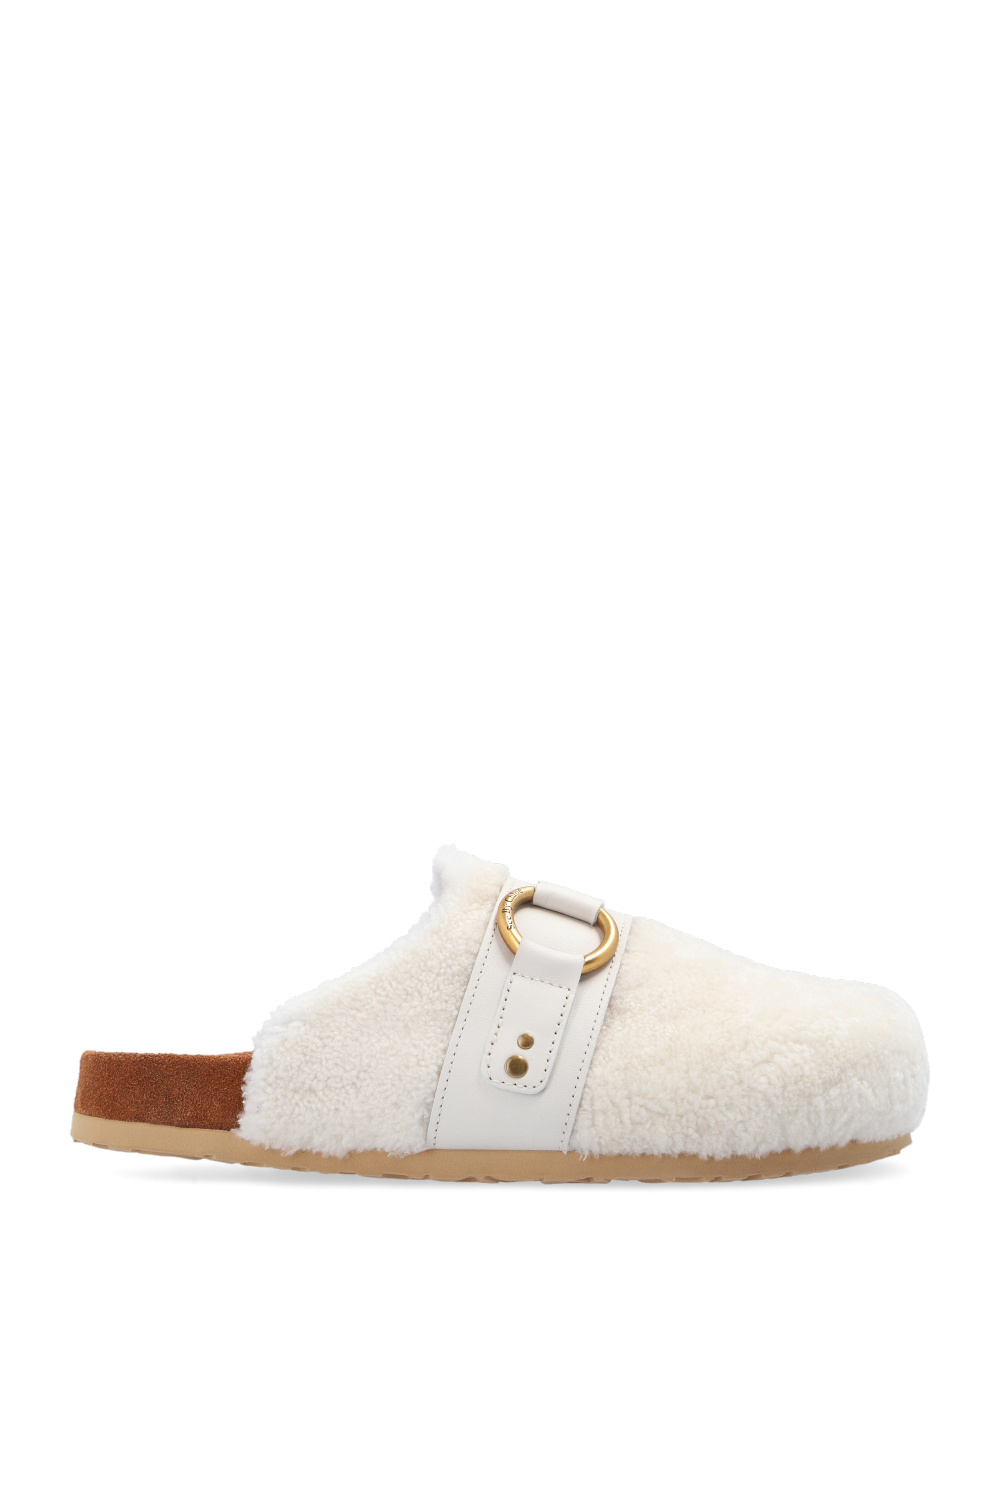 Louis Vuitton Mink Fay Flat Mule Sandals - Size 41